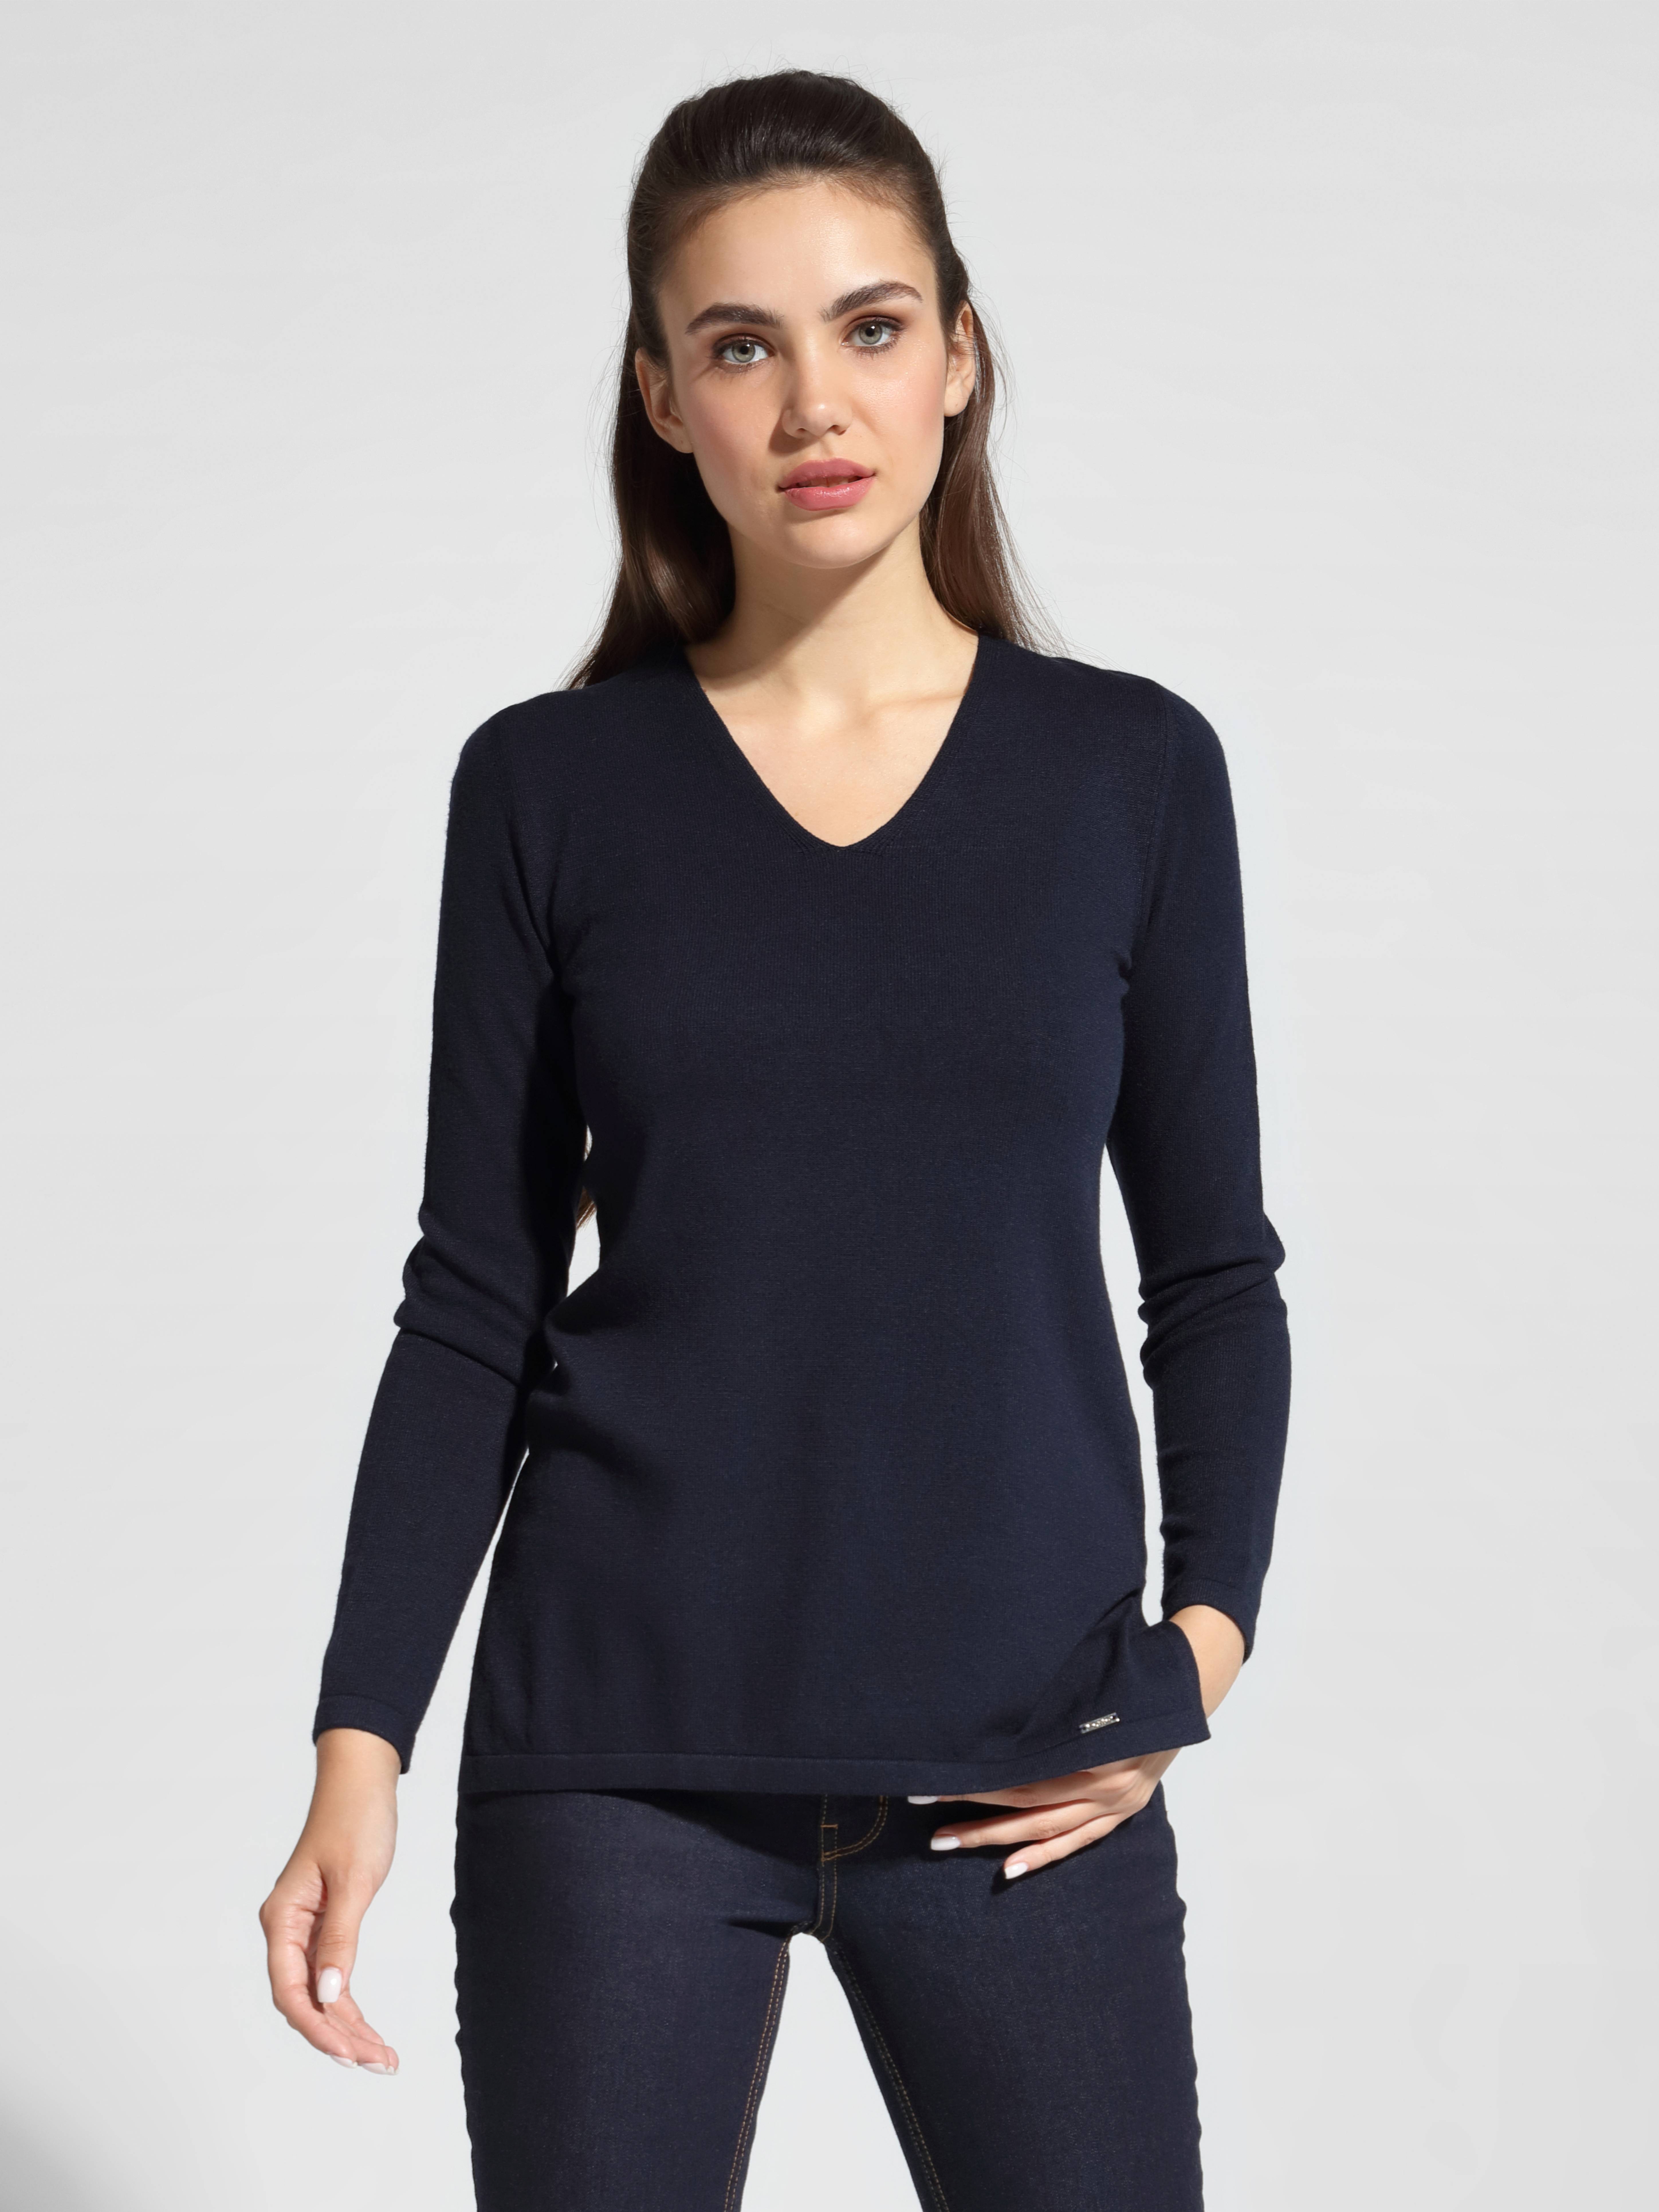 Удлиненный вязаный пуловер с разрезами по бокам LDK 056 Conte ⭐️, цвет pastel blue, размер 170-100 - фото 1